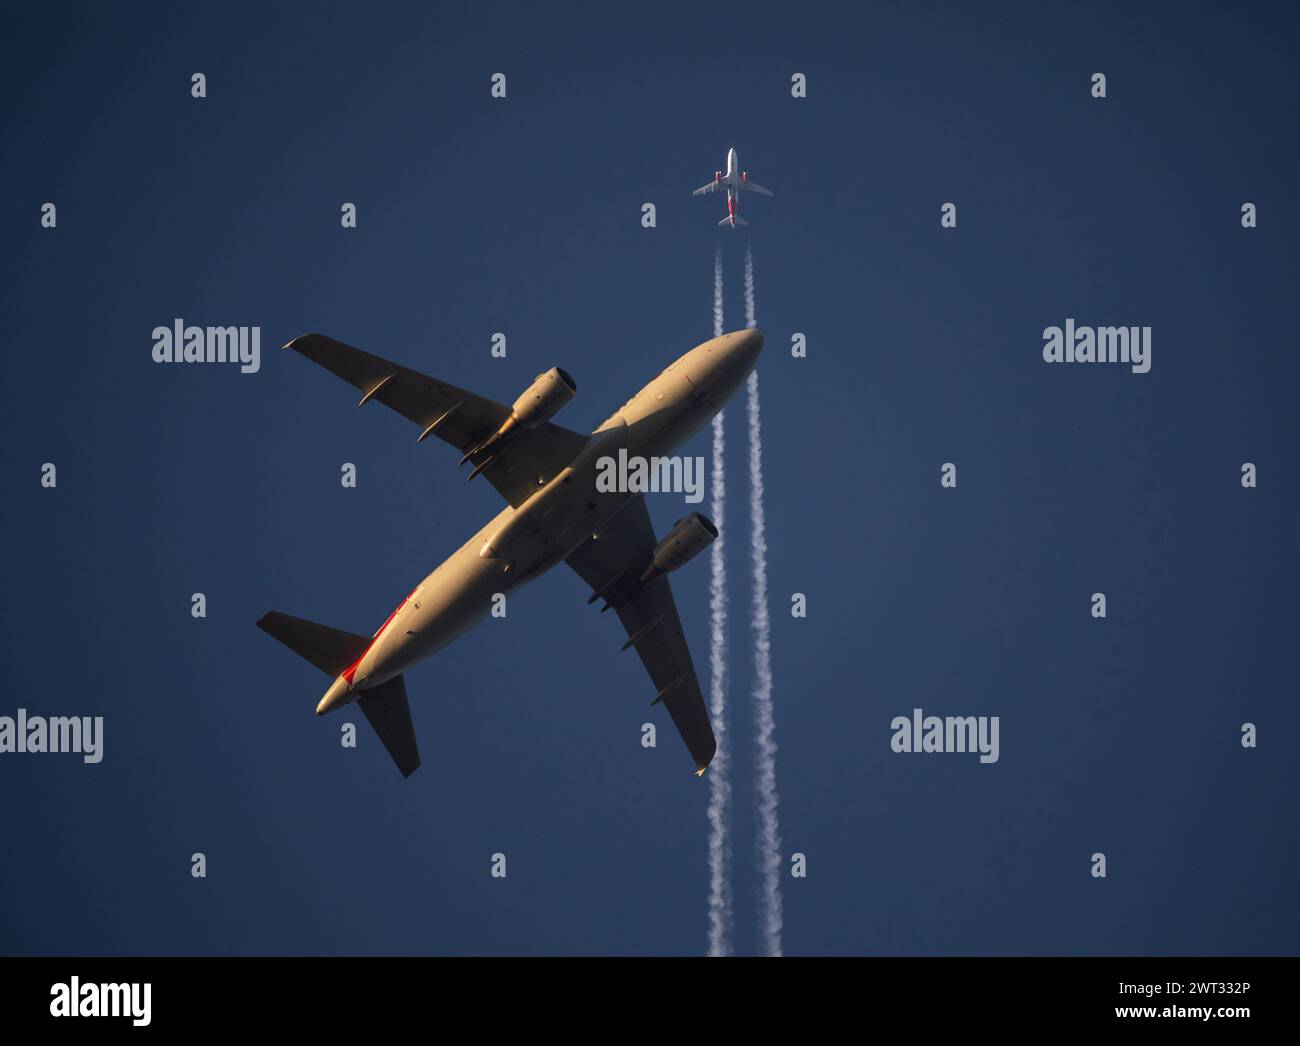 Un avion de ligne commercial à basse altitude passe sous un avion de ligne à haute altitude peu après son décollage au coucher du soleil. Banque D'Images